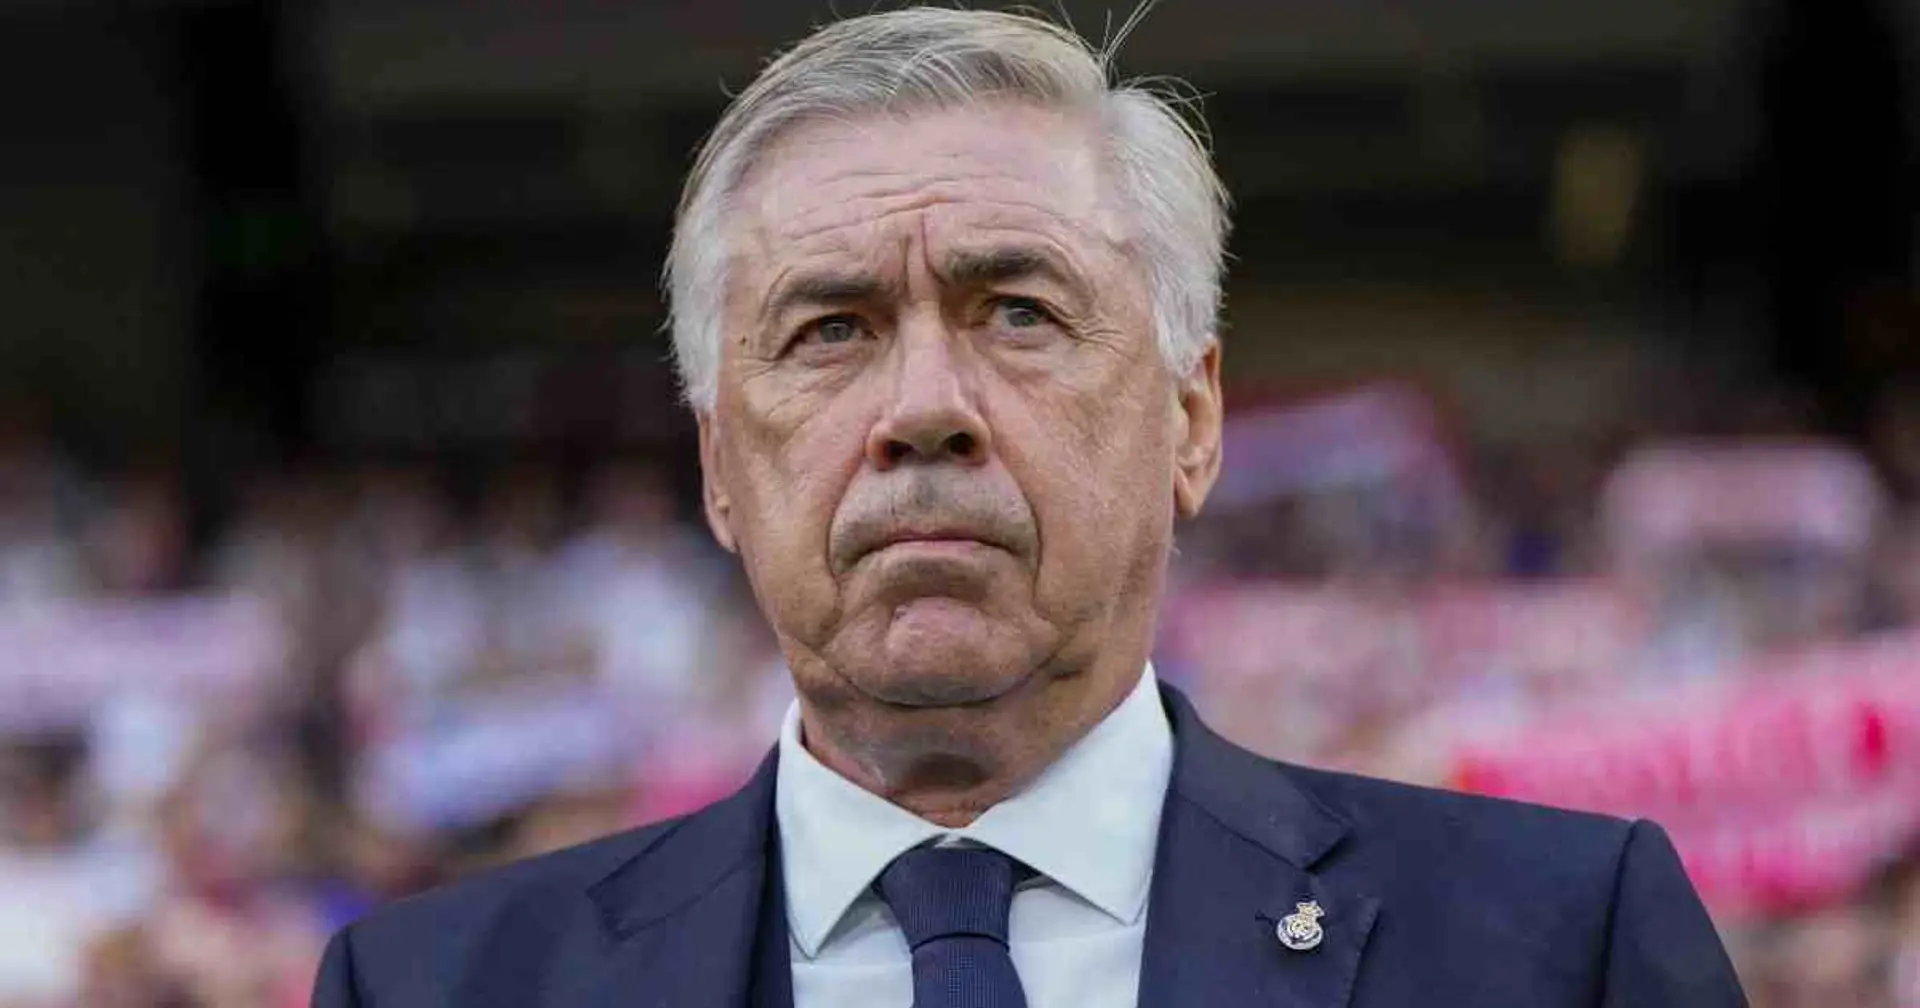 Guai in Spagna per Carlo Ancelotti: chiesti 5 anni di carcere per il tecnico del Real Madrid